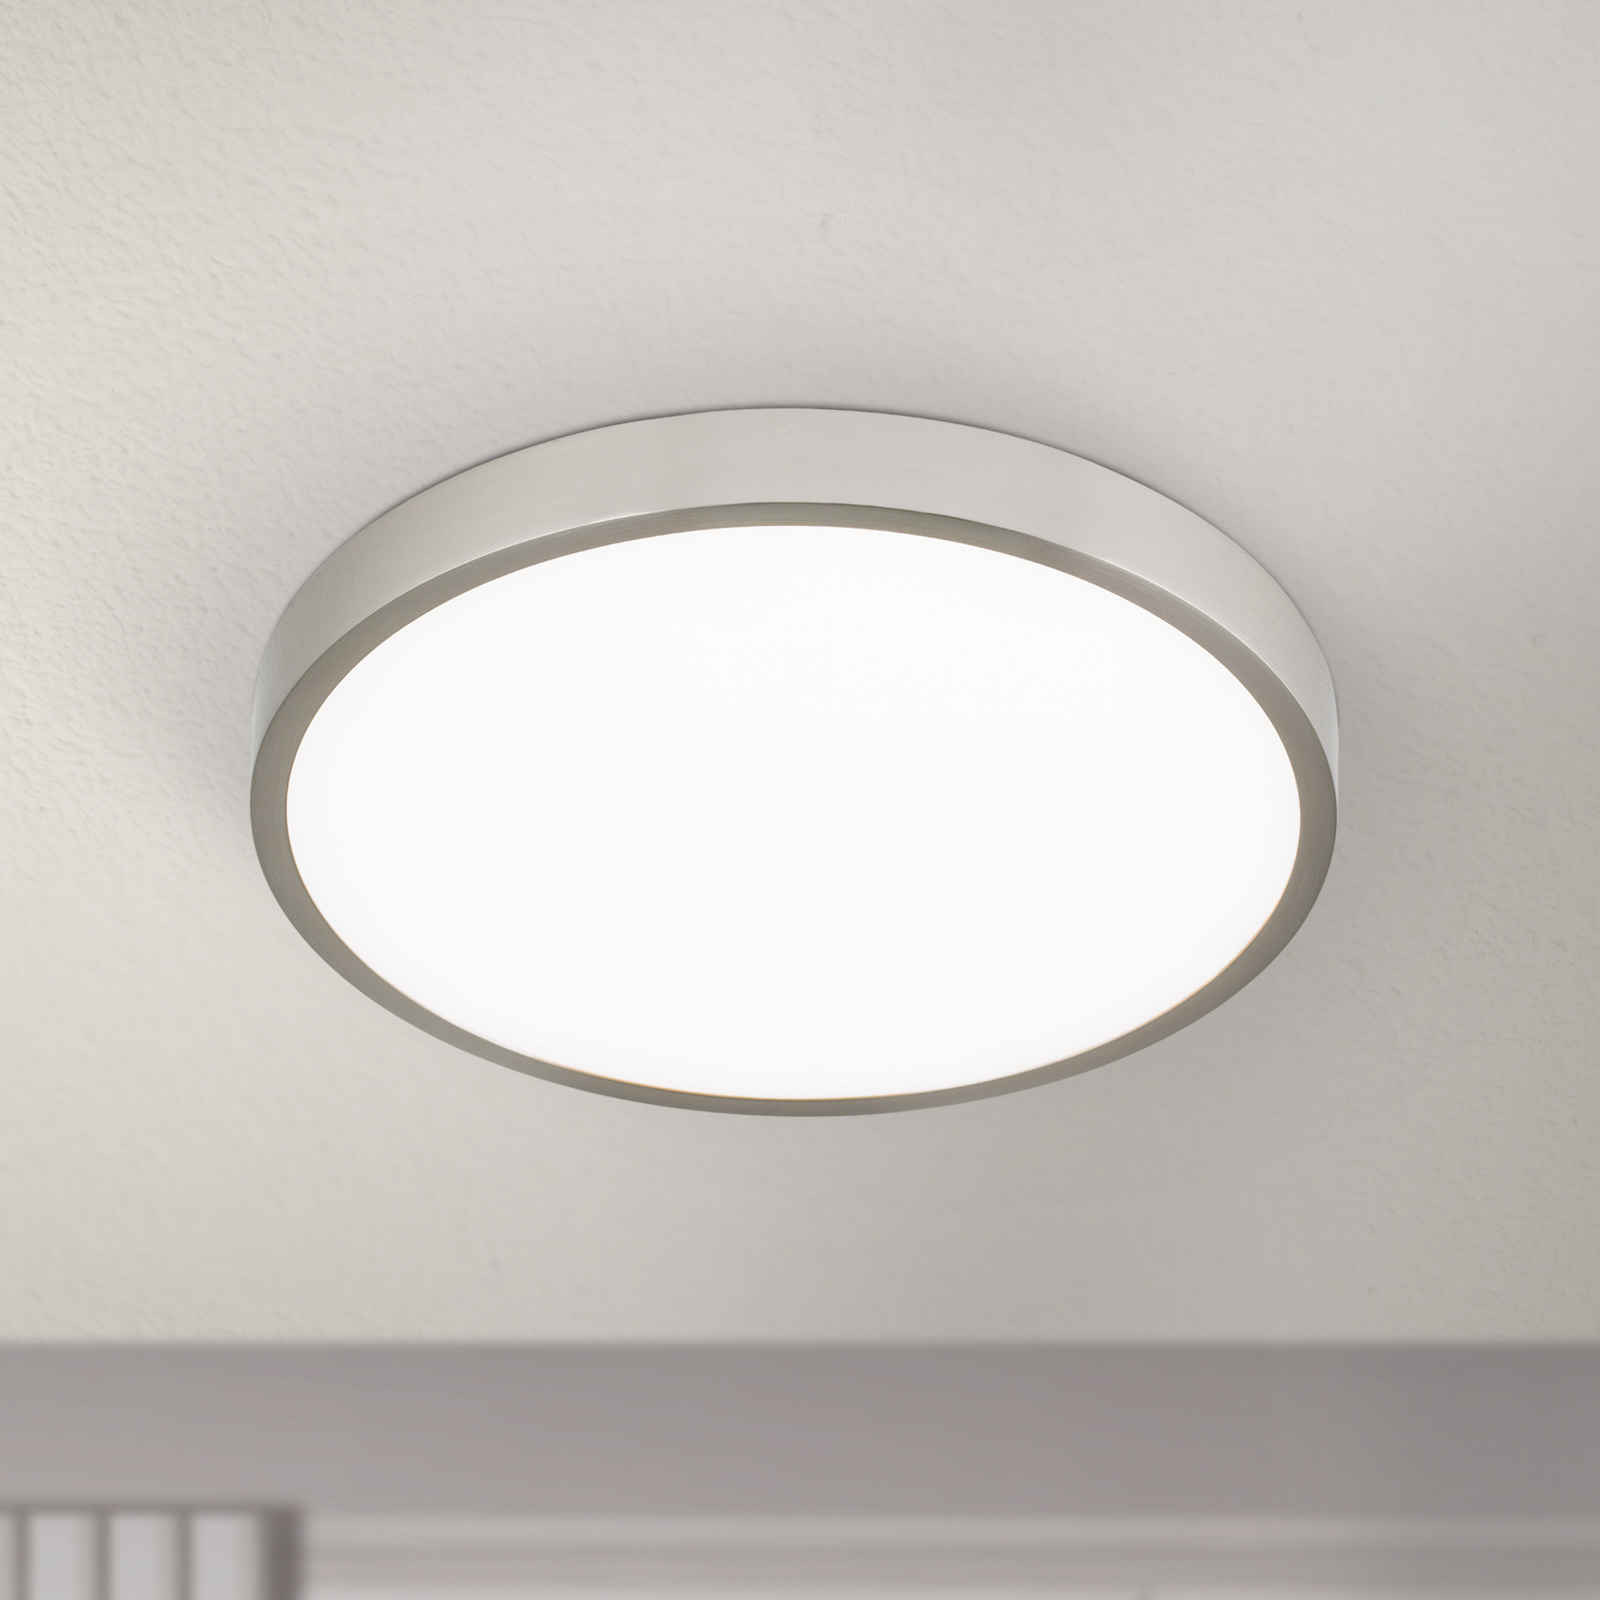 Φωτιστικό οροφής Bully LED, ματ νικέλιο, Ø 28 cm